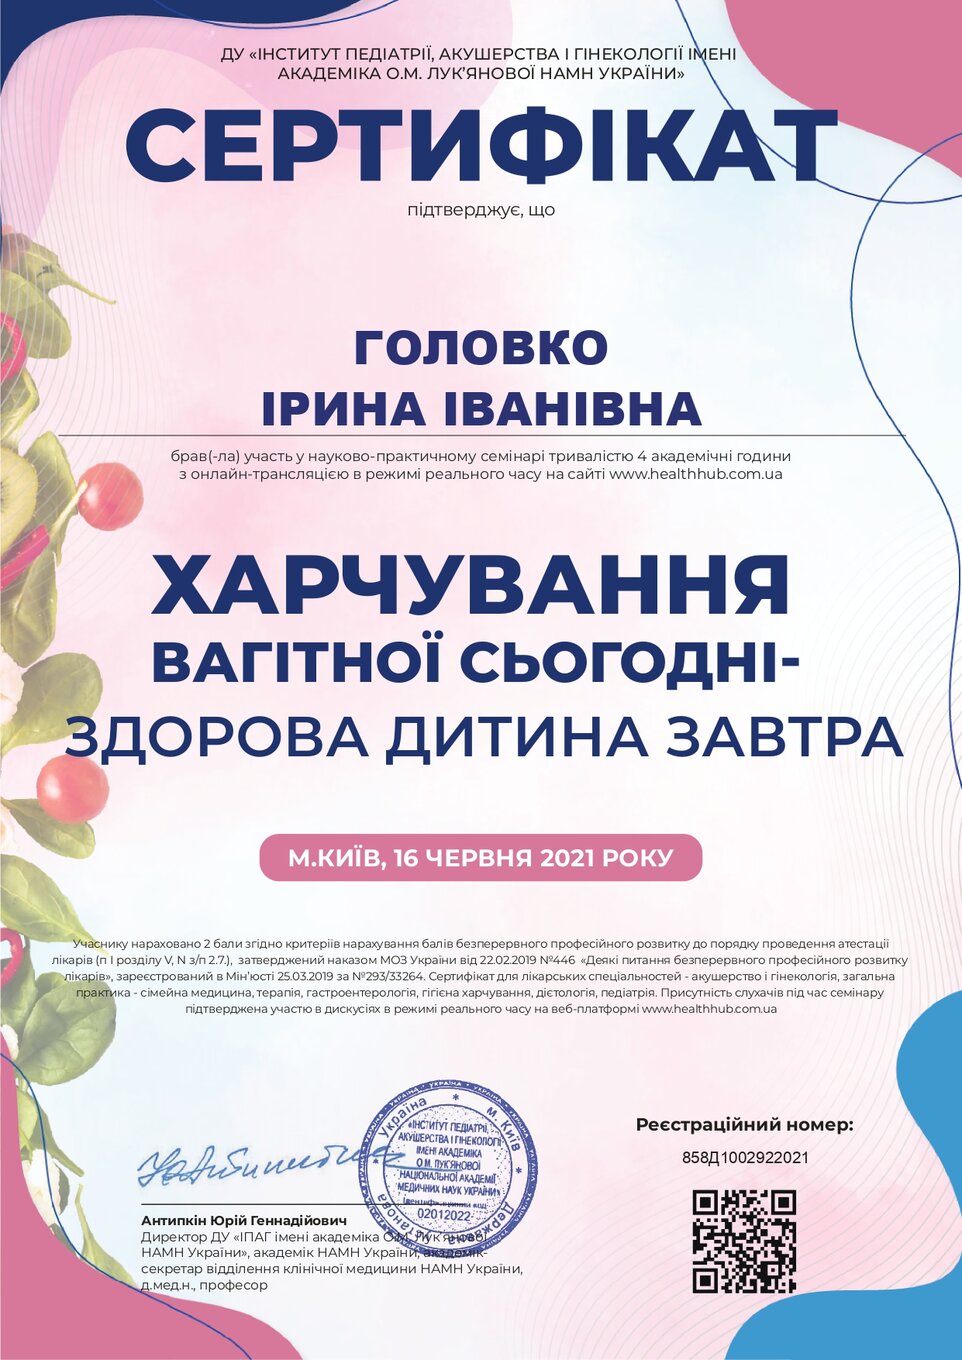 Golovko Irina Ivanivna sertifikat2